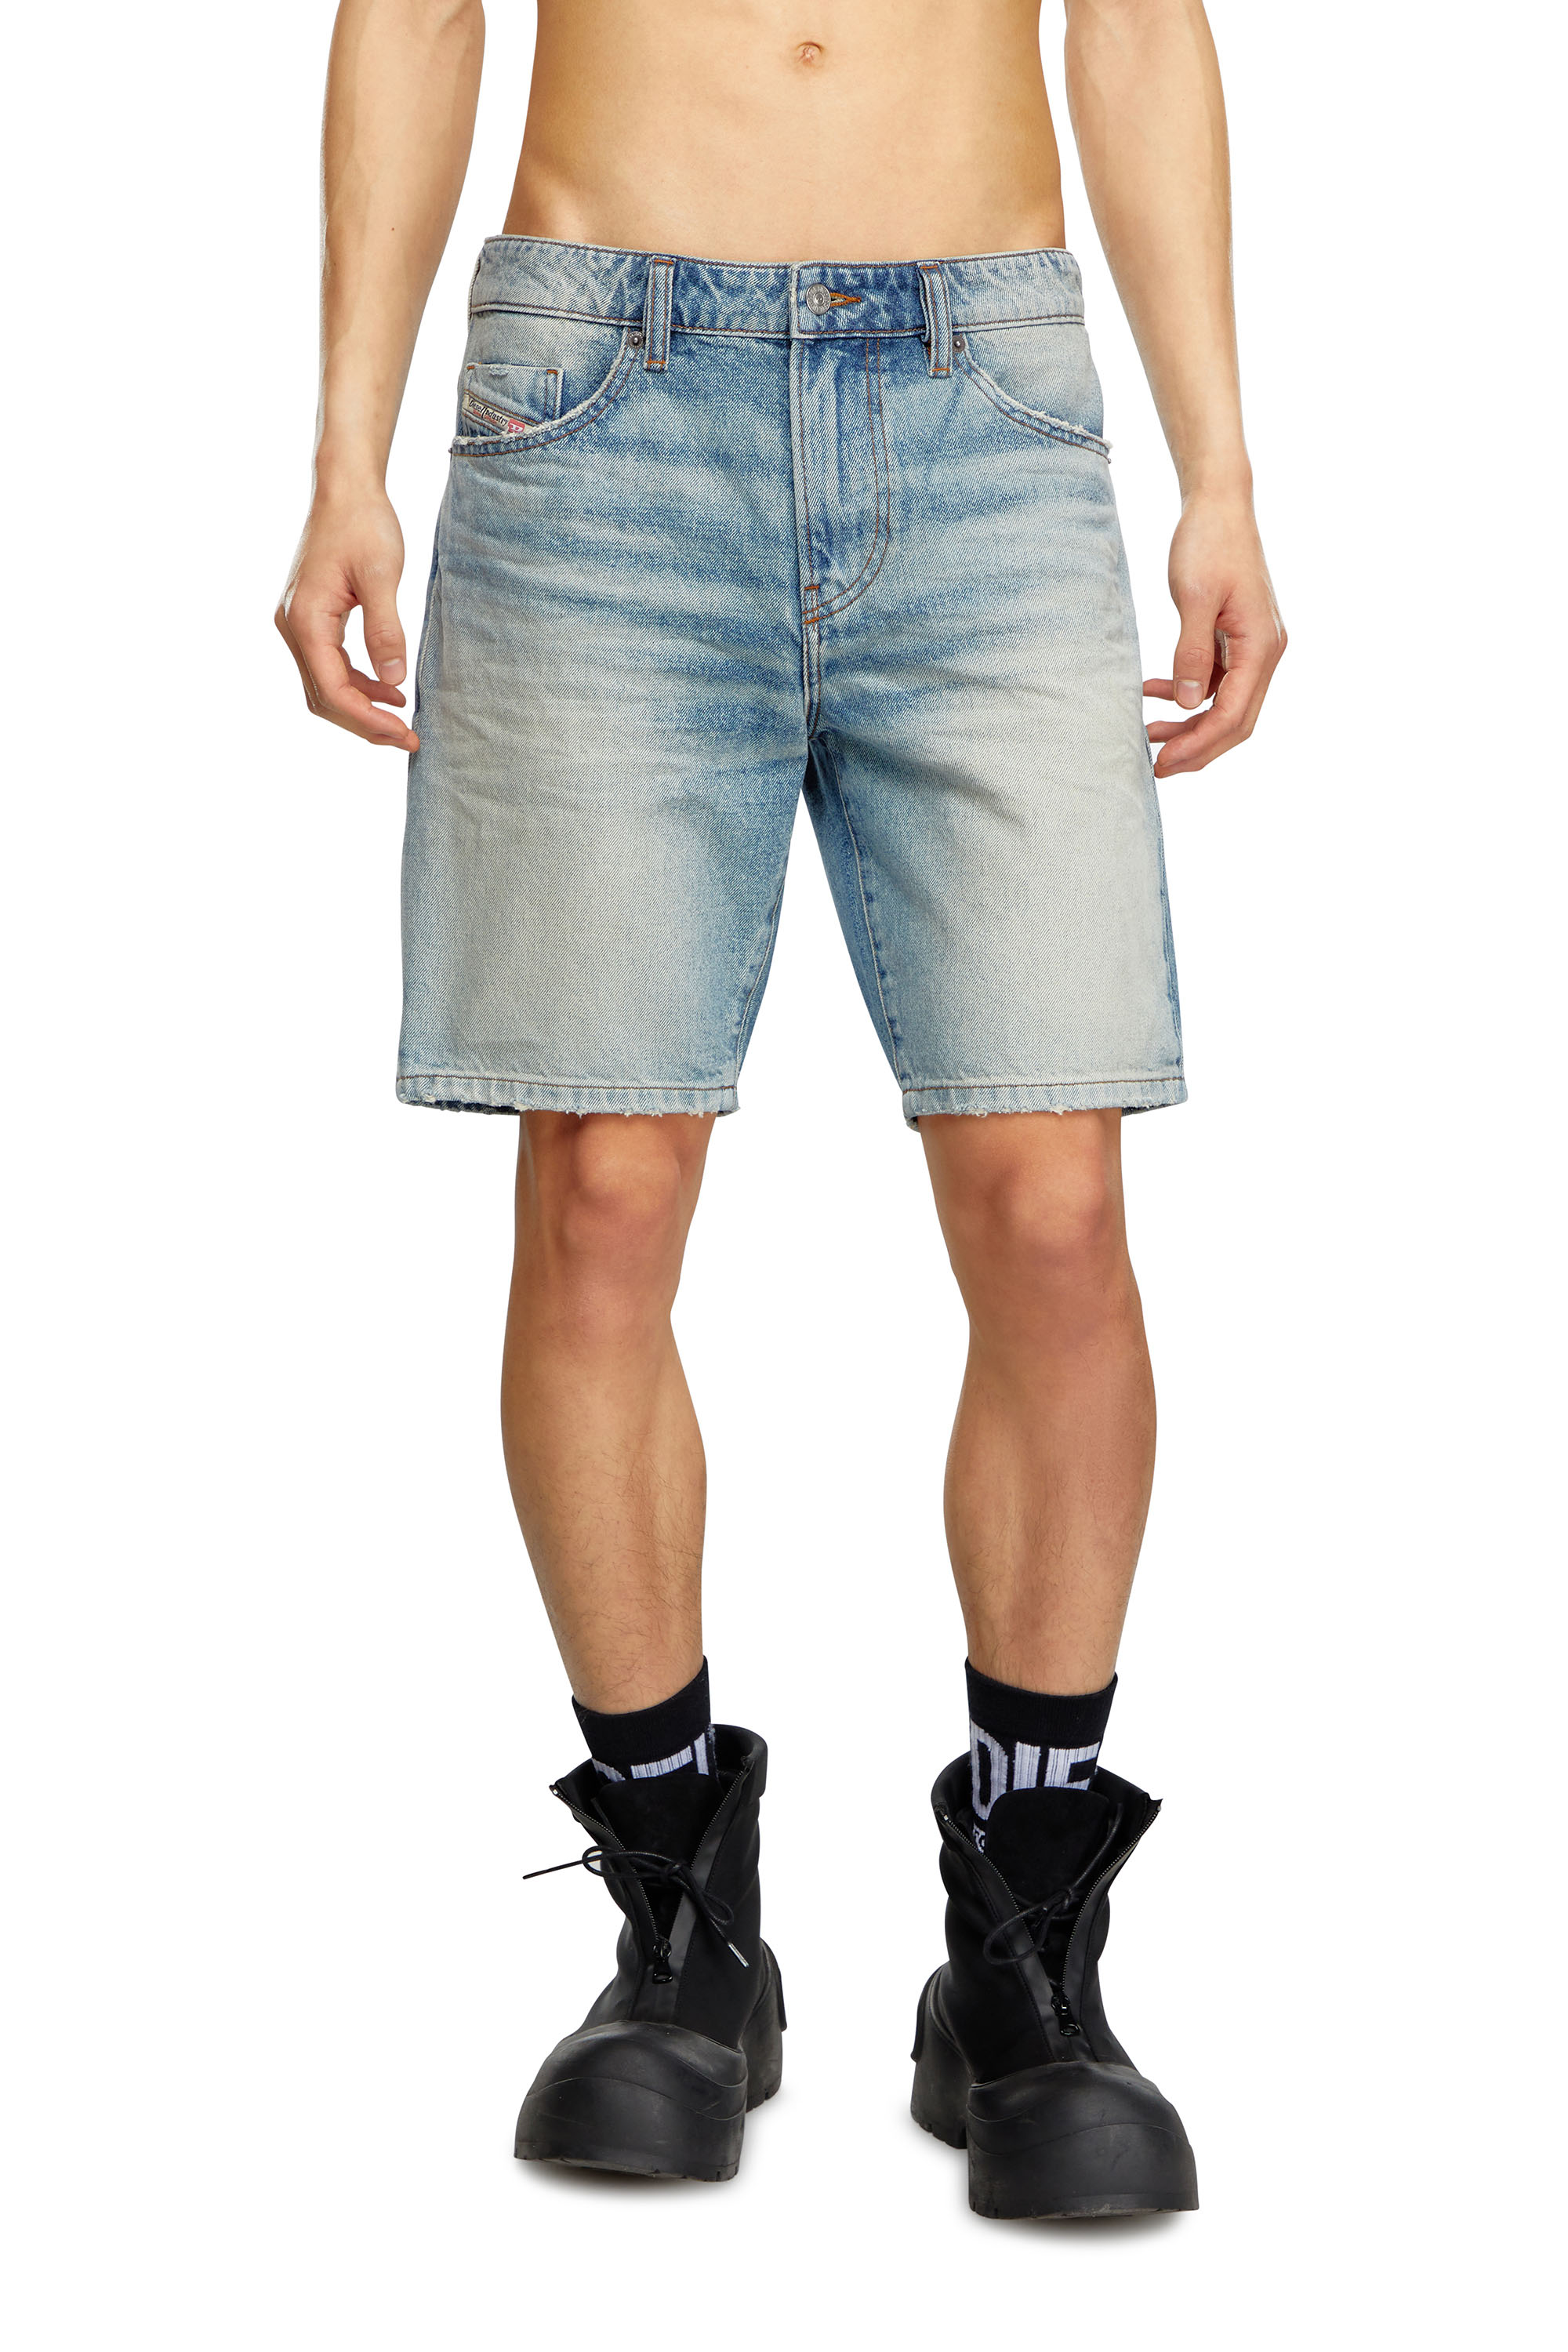 Diesel - Pantalones cortos vaqueros slim - Shorts - Hombre - Azul marino